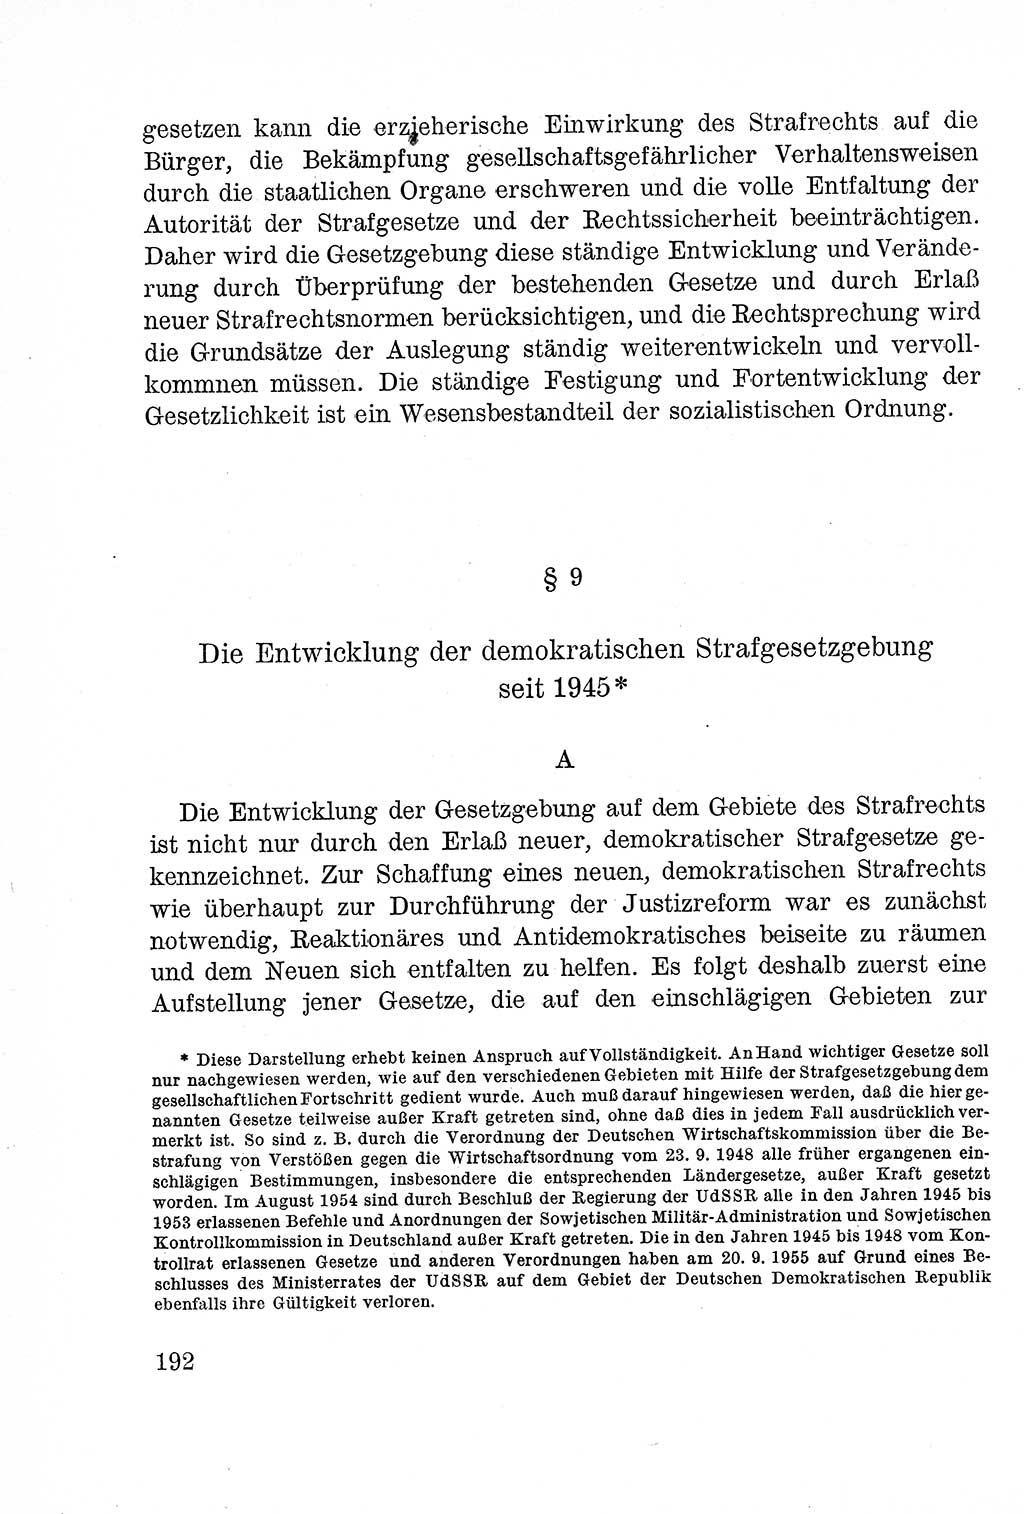 Lehrbuch des Strafrechts der Deutschen Demokratischen Republik (DDR), Allgemeiner Teil 1957, Seite 192 (Lb. Strafr. DDR AT 1957, S. 192)